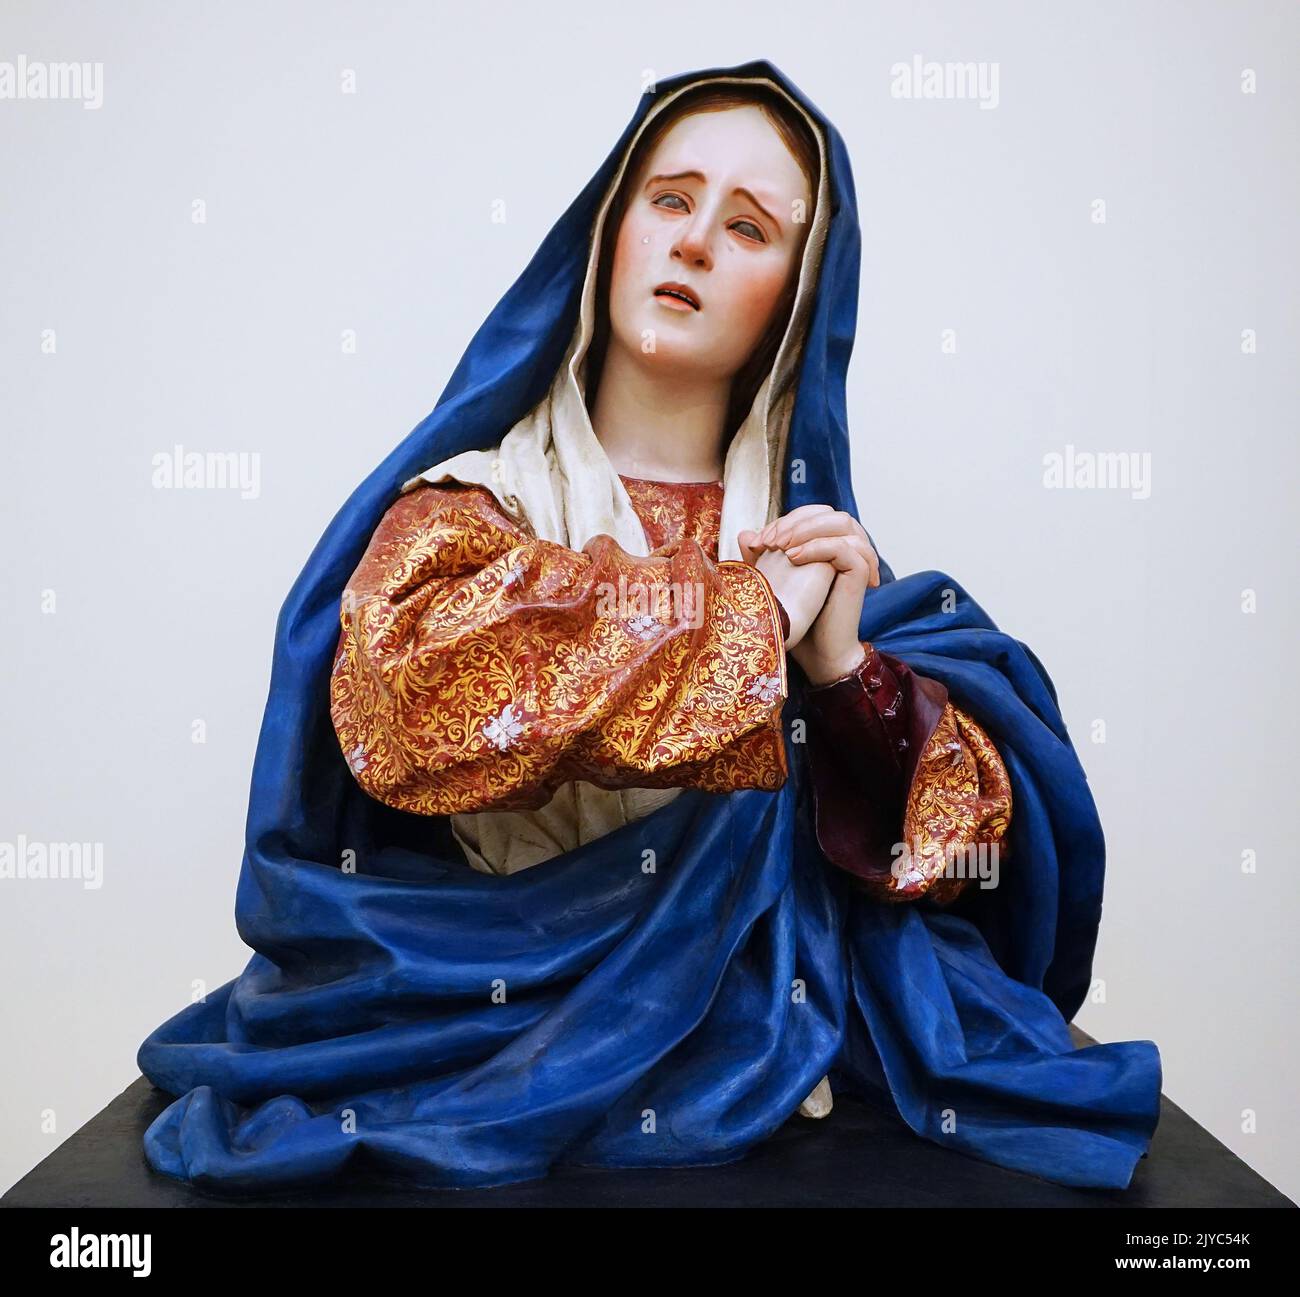 Sorrowing Mary or Dolorosa by Pedro de Mena y Medrano (1628-1688) Spanish sculptor. Stock Photo